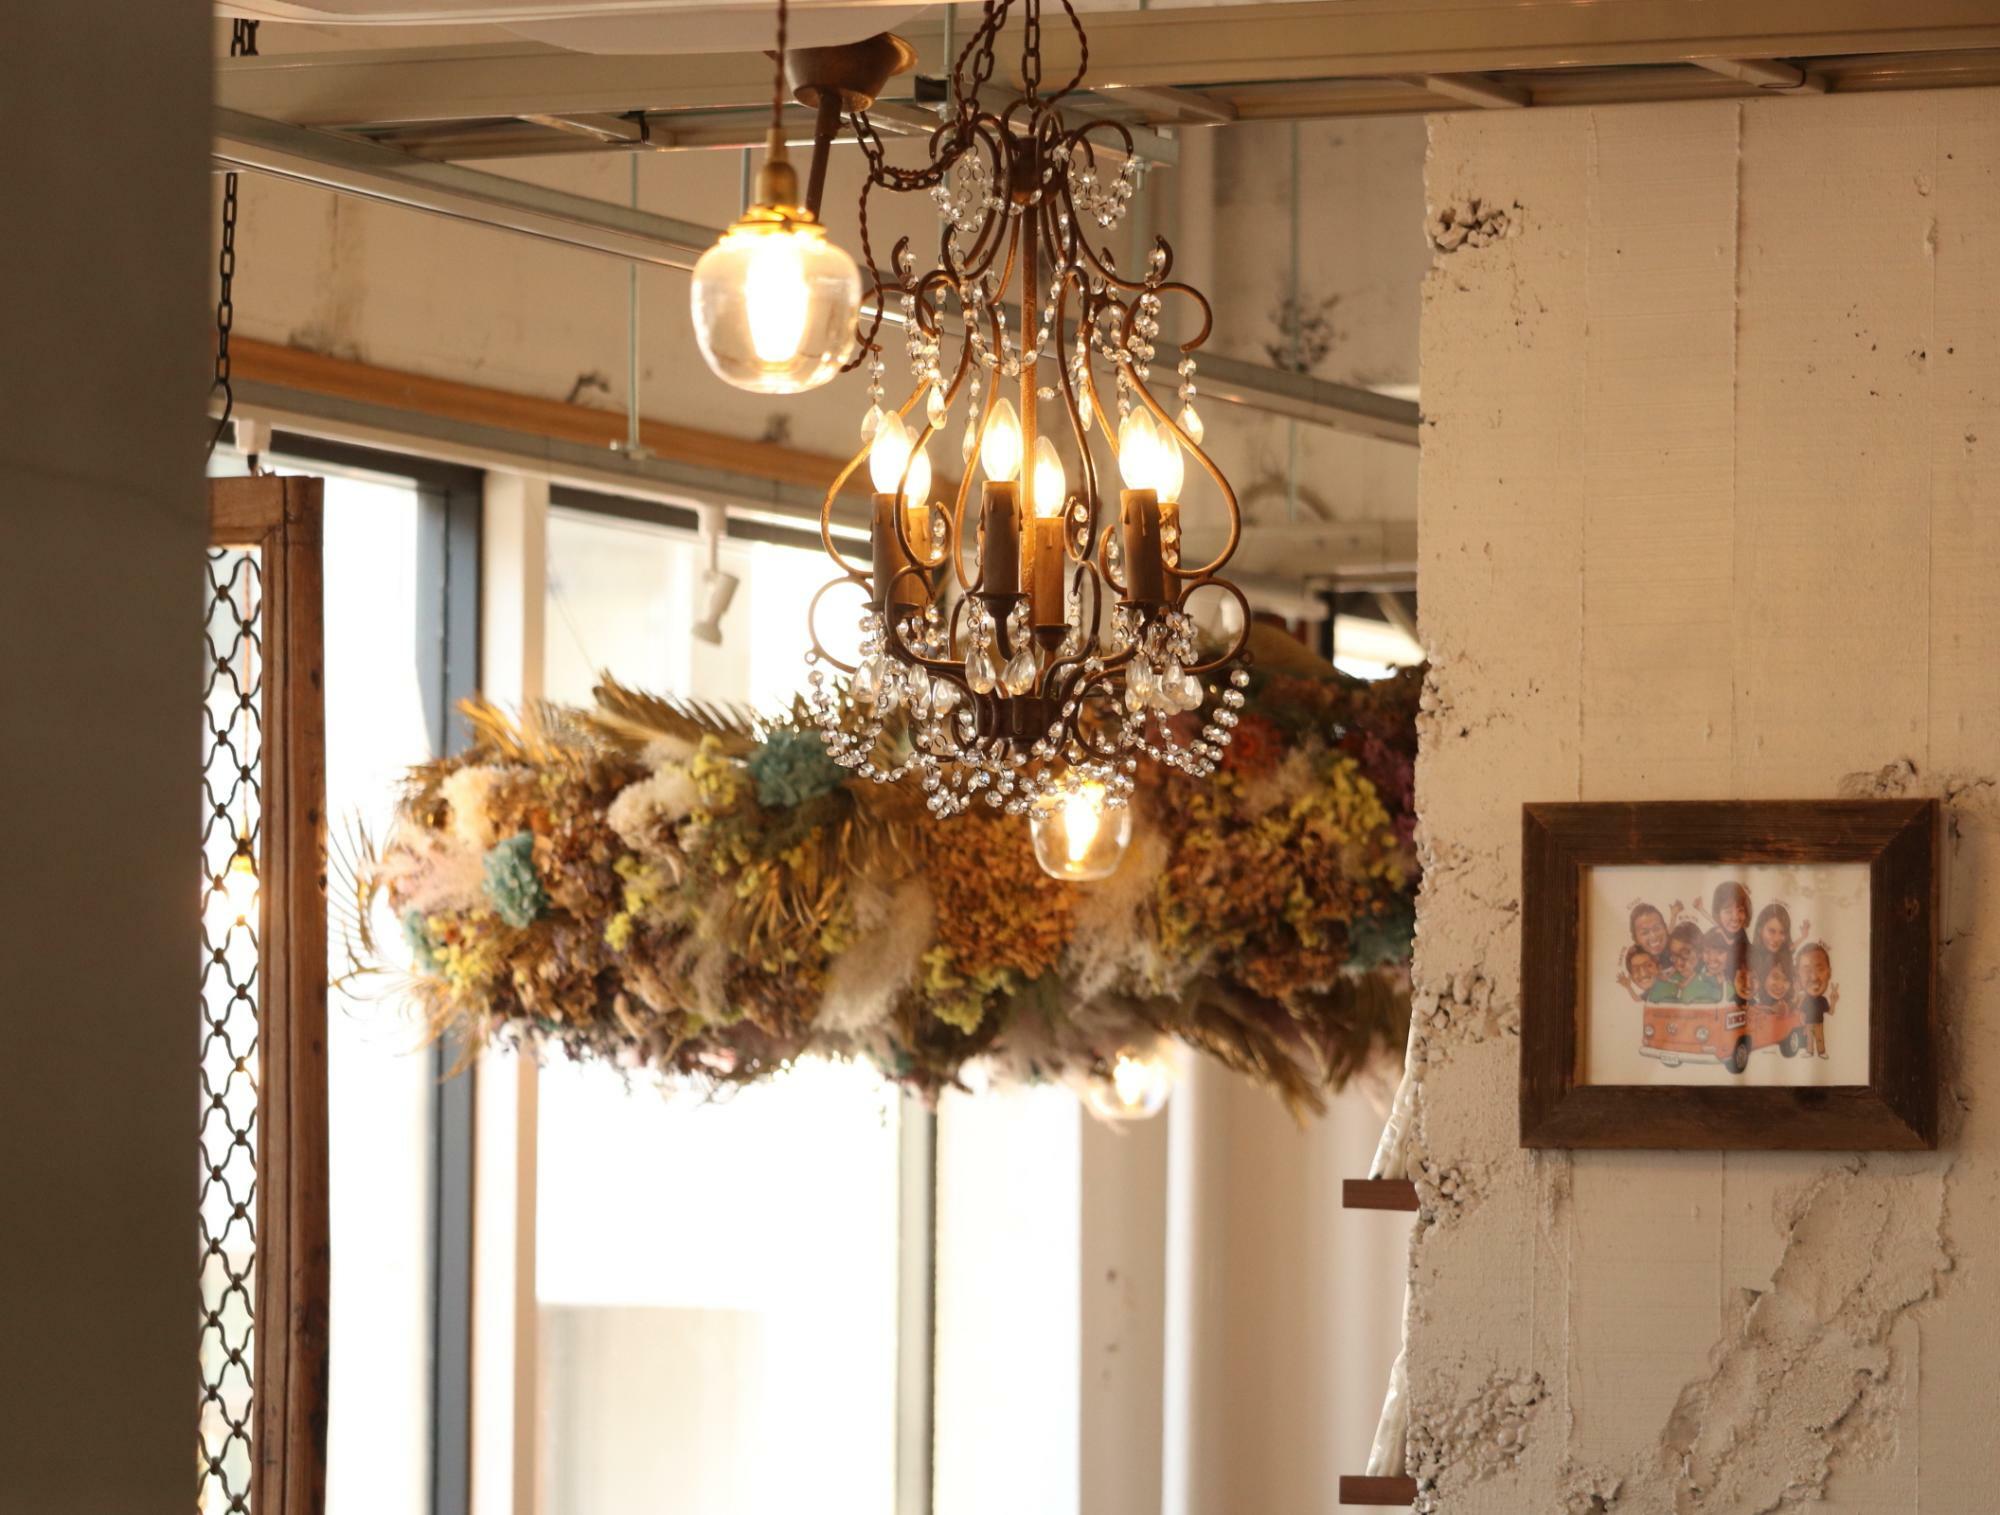 『Sprout bread & café』のエントランスに飾られるドライフラワーのシャンデリア（大類祥子さん作）